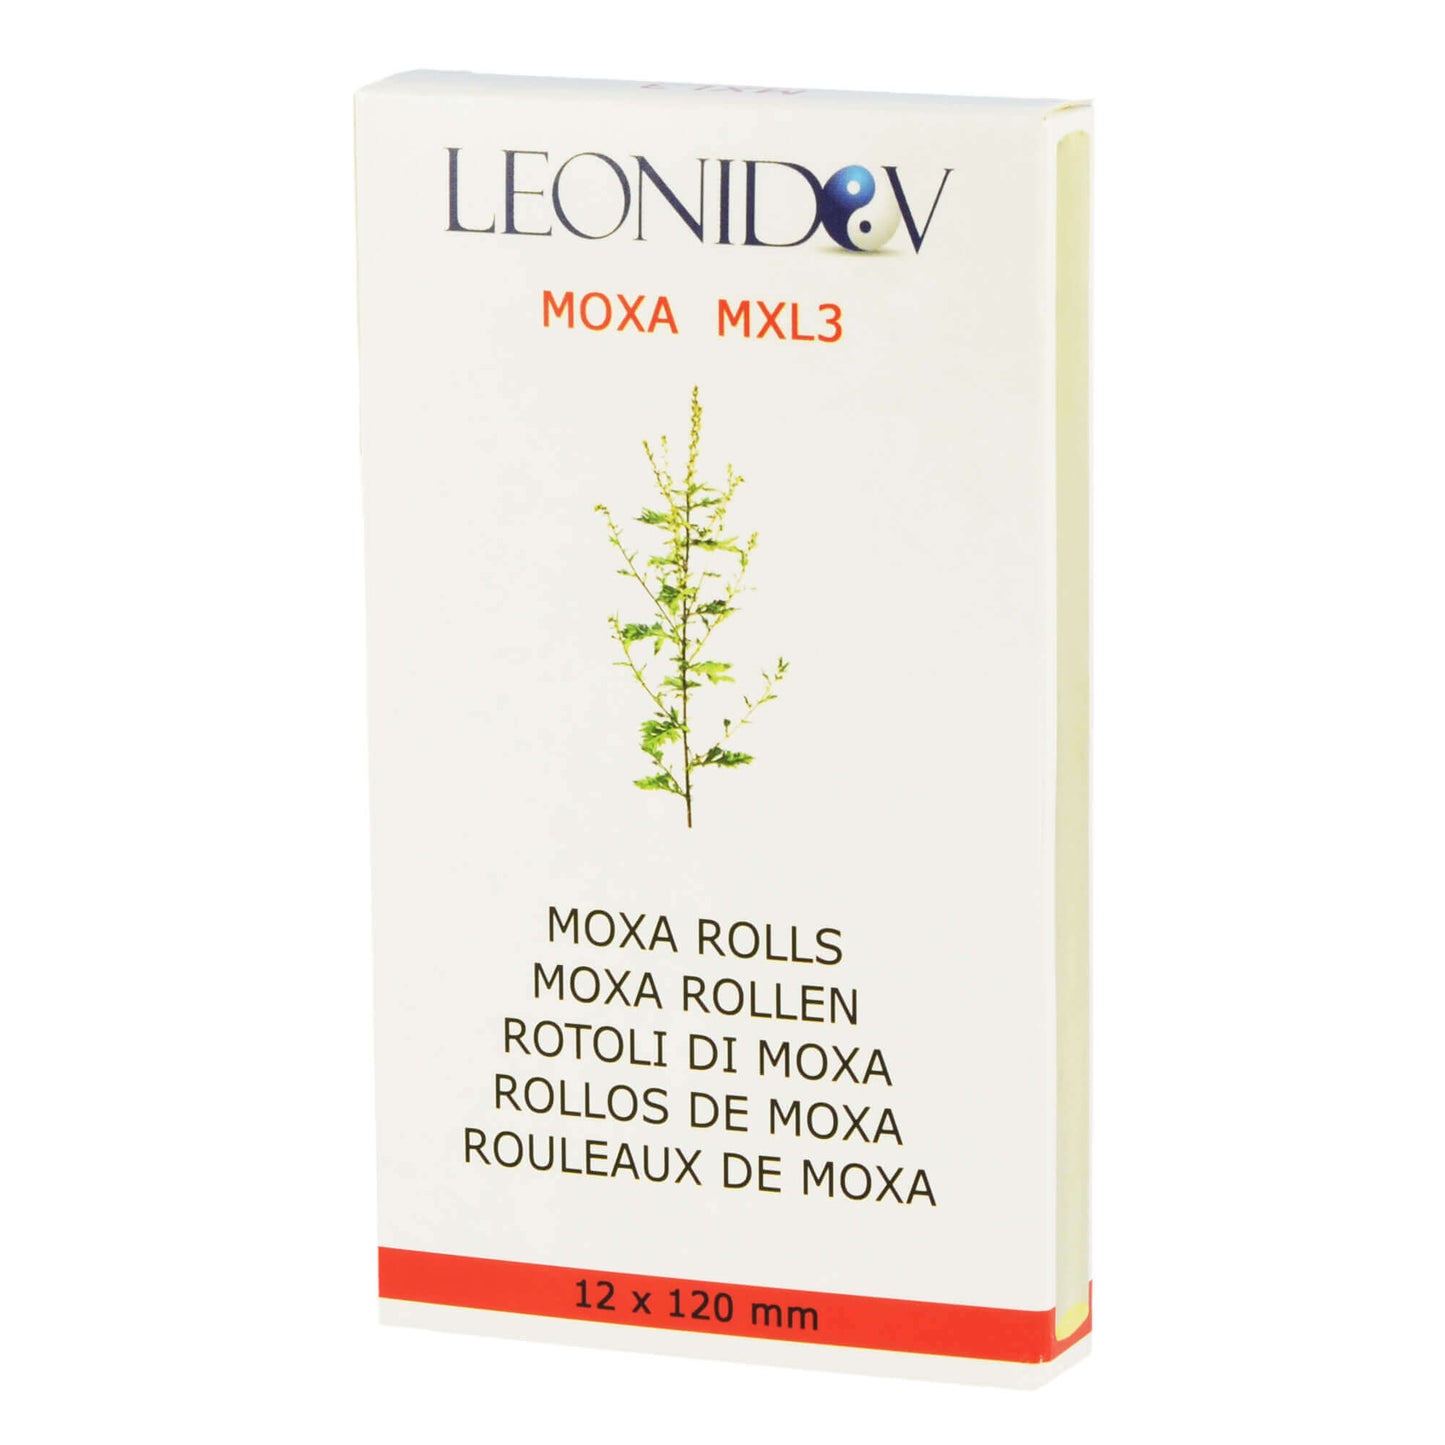 Moxa sigaren MXL3 (cigarillo) bijzonder hoge kwaliteit